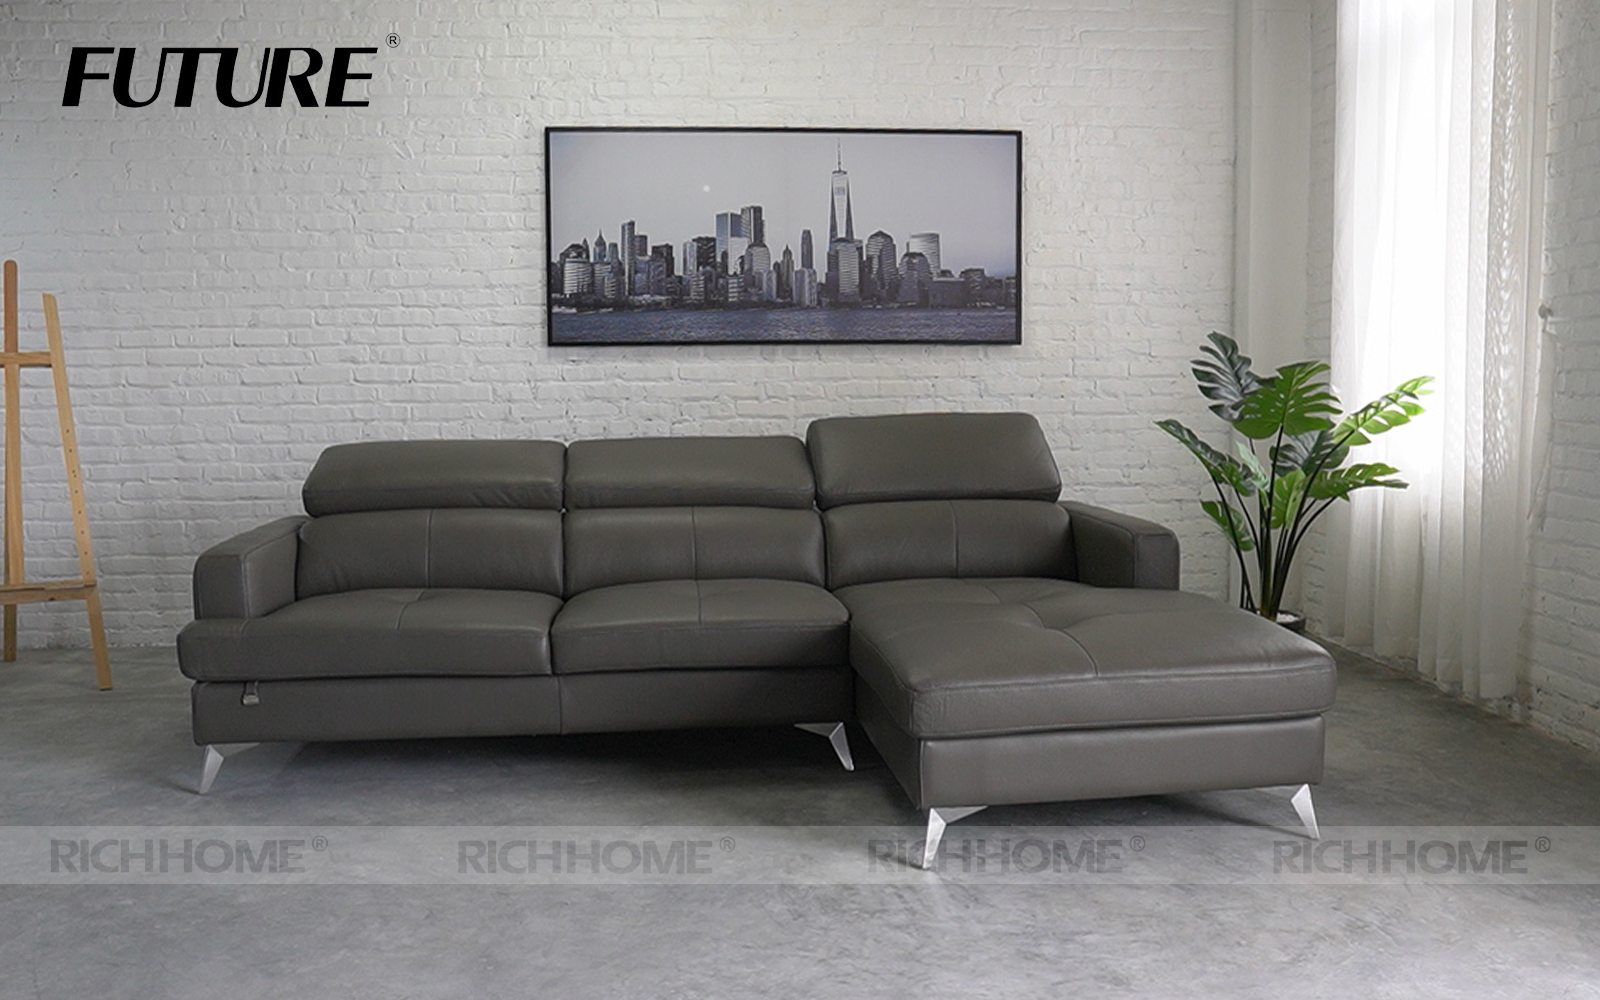 Địa chỉ bán sofa góc đẹp hoàn hảo cho ngôi nhà của bạn - Ảnh 2